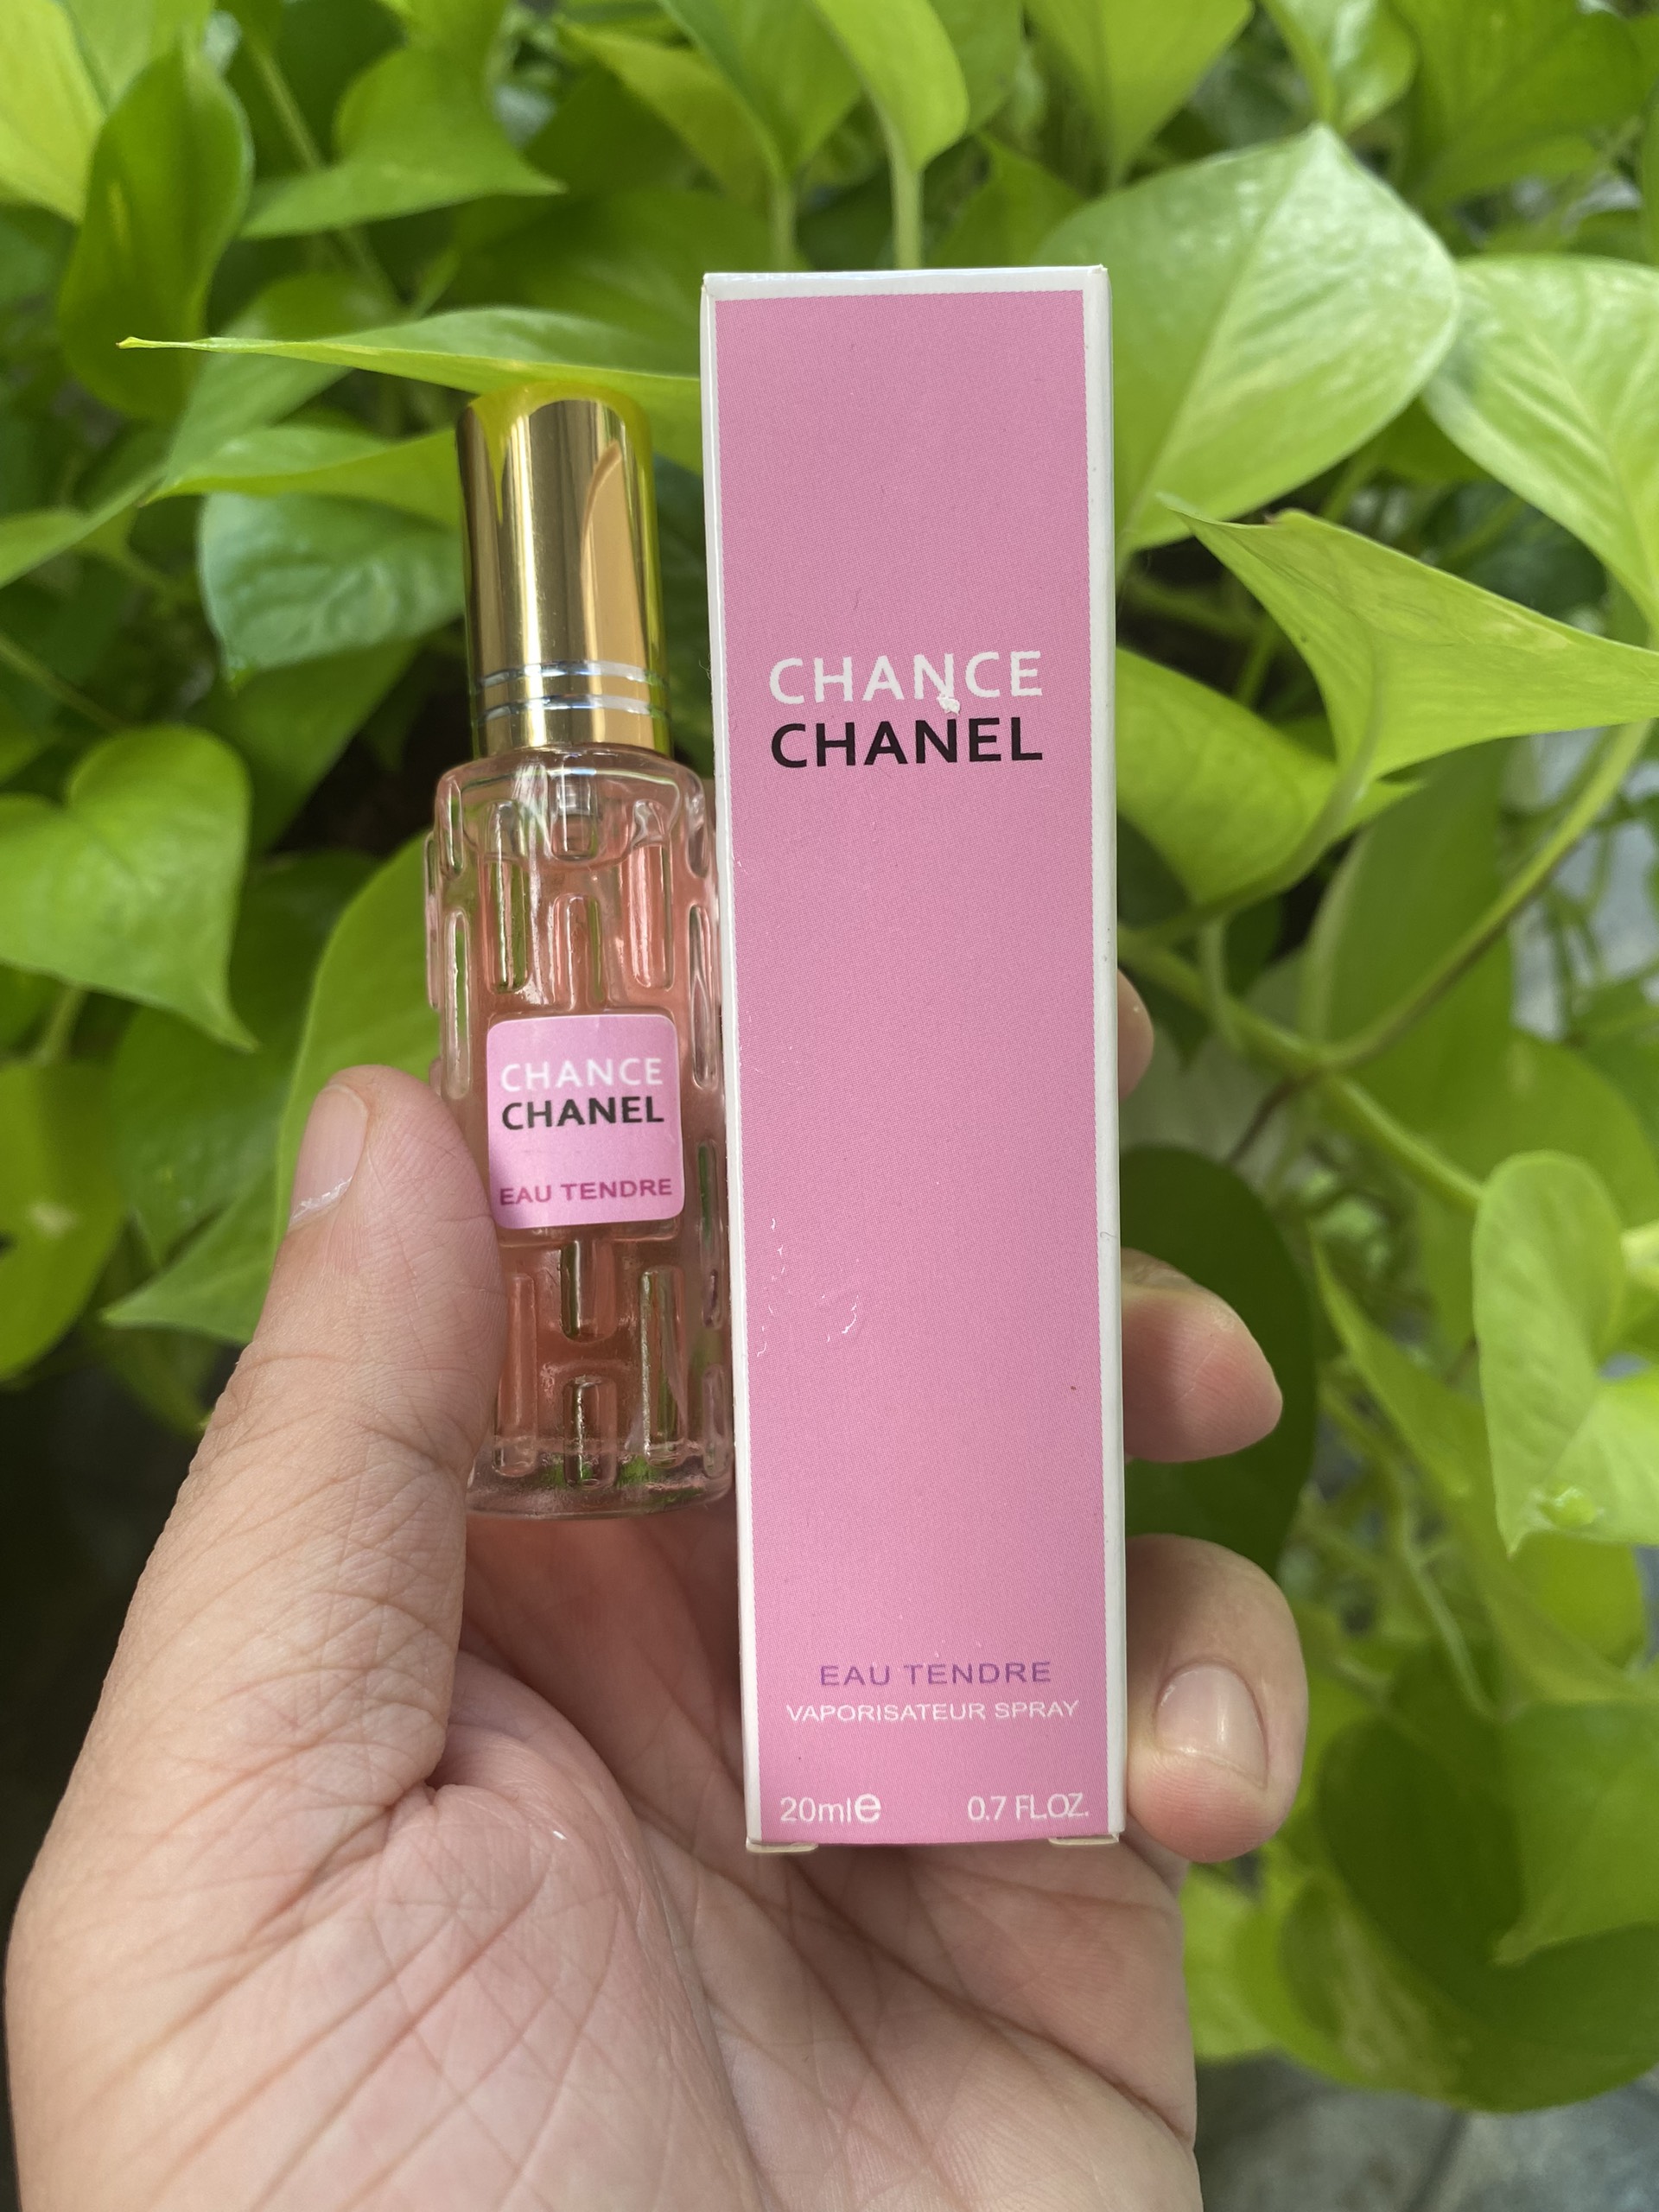 Nước hoa Nữ Charme Chance 30ml